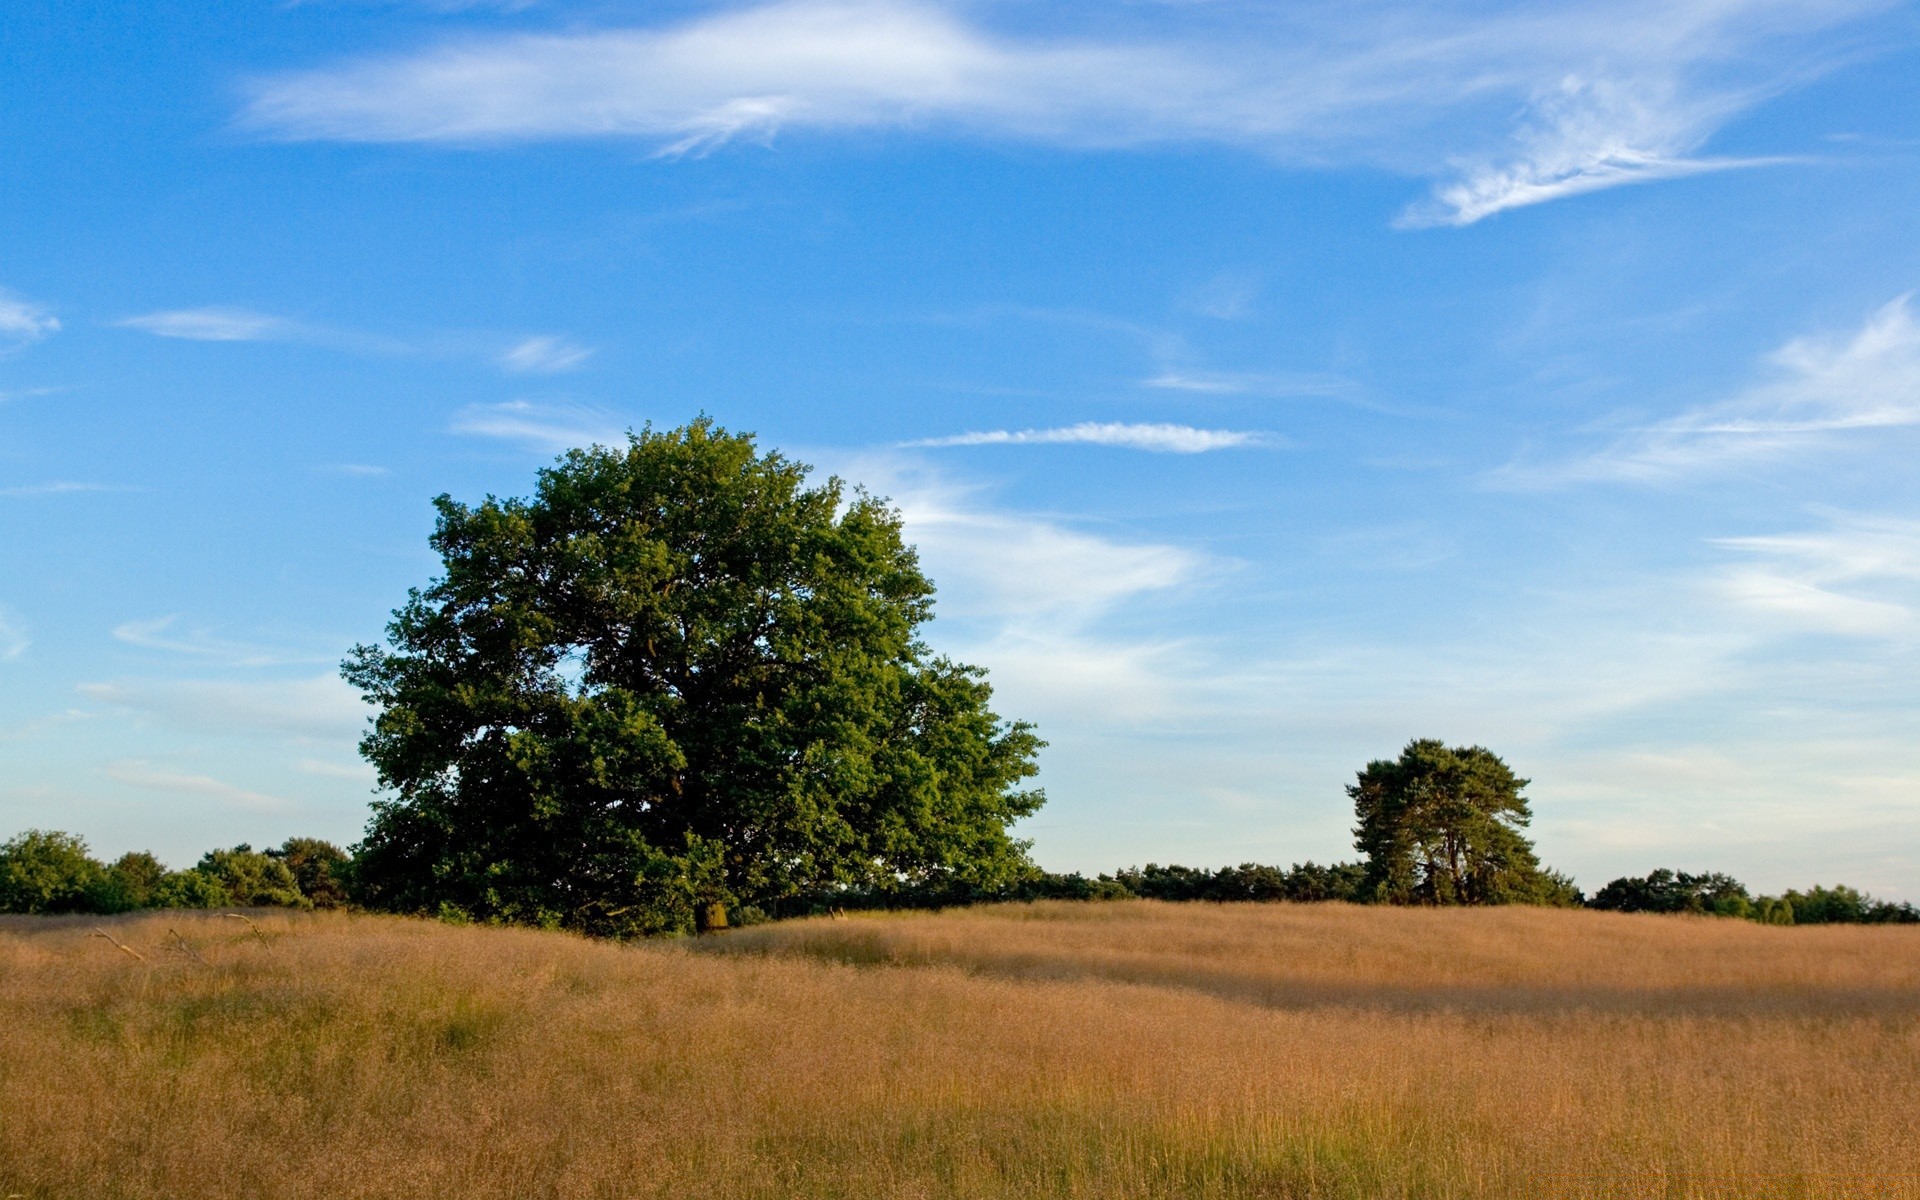 пейзажи пейзаж дерево небо природа поле трава на открытом воздухе возделываемые земли пастбища сельское хозяйство дневной свет сенокос ферма сельской местности среды горизонт